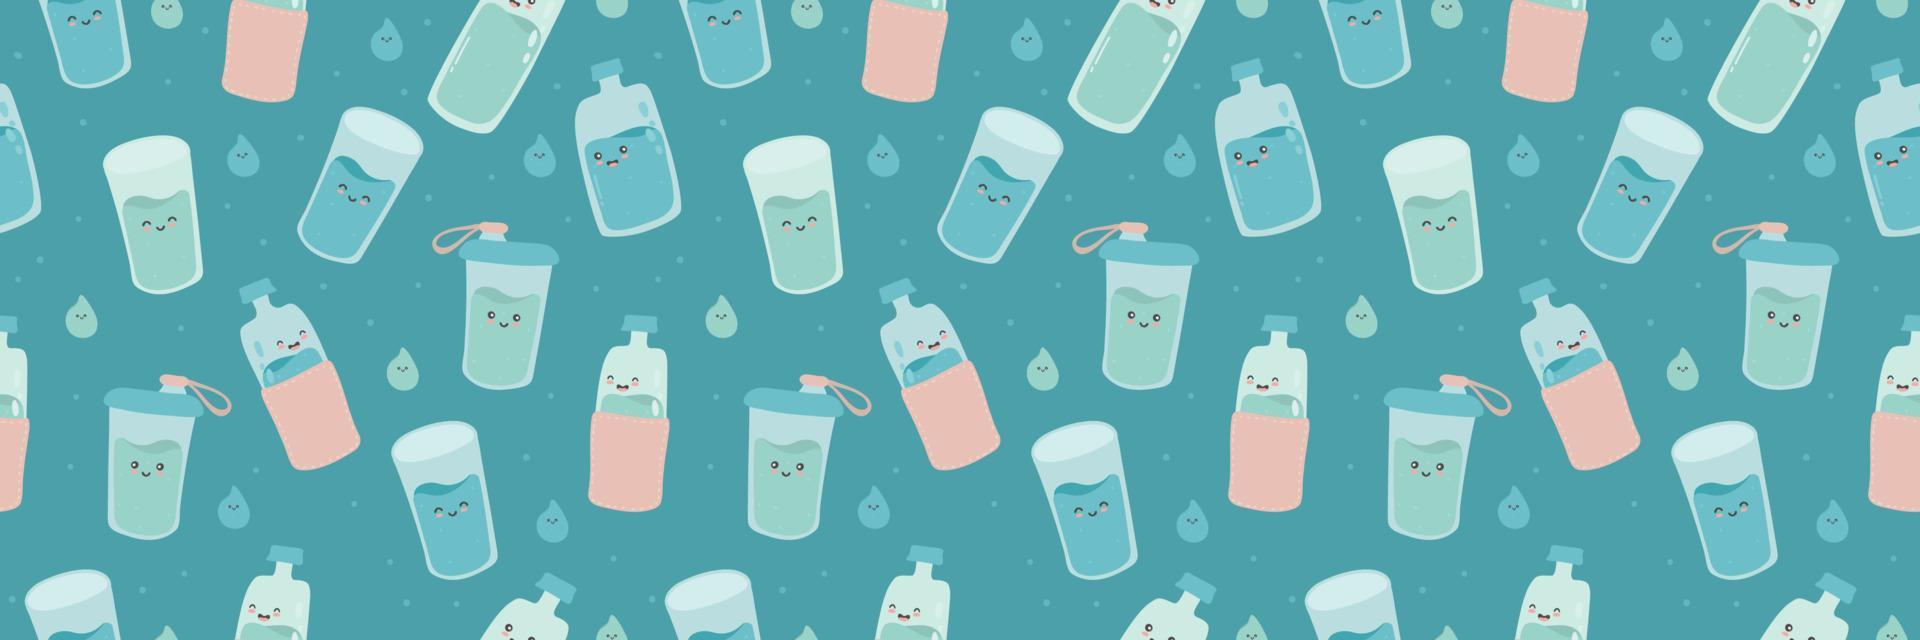 bordure horizontale transparente, bannière web avec de jolies bouteilles et verres amusants et amusants. eau de personnage de dessin animé kawaii de vecteur. boire plus d'eau chaque jour concept. vecteur